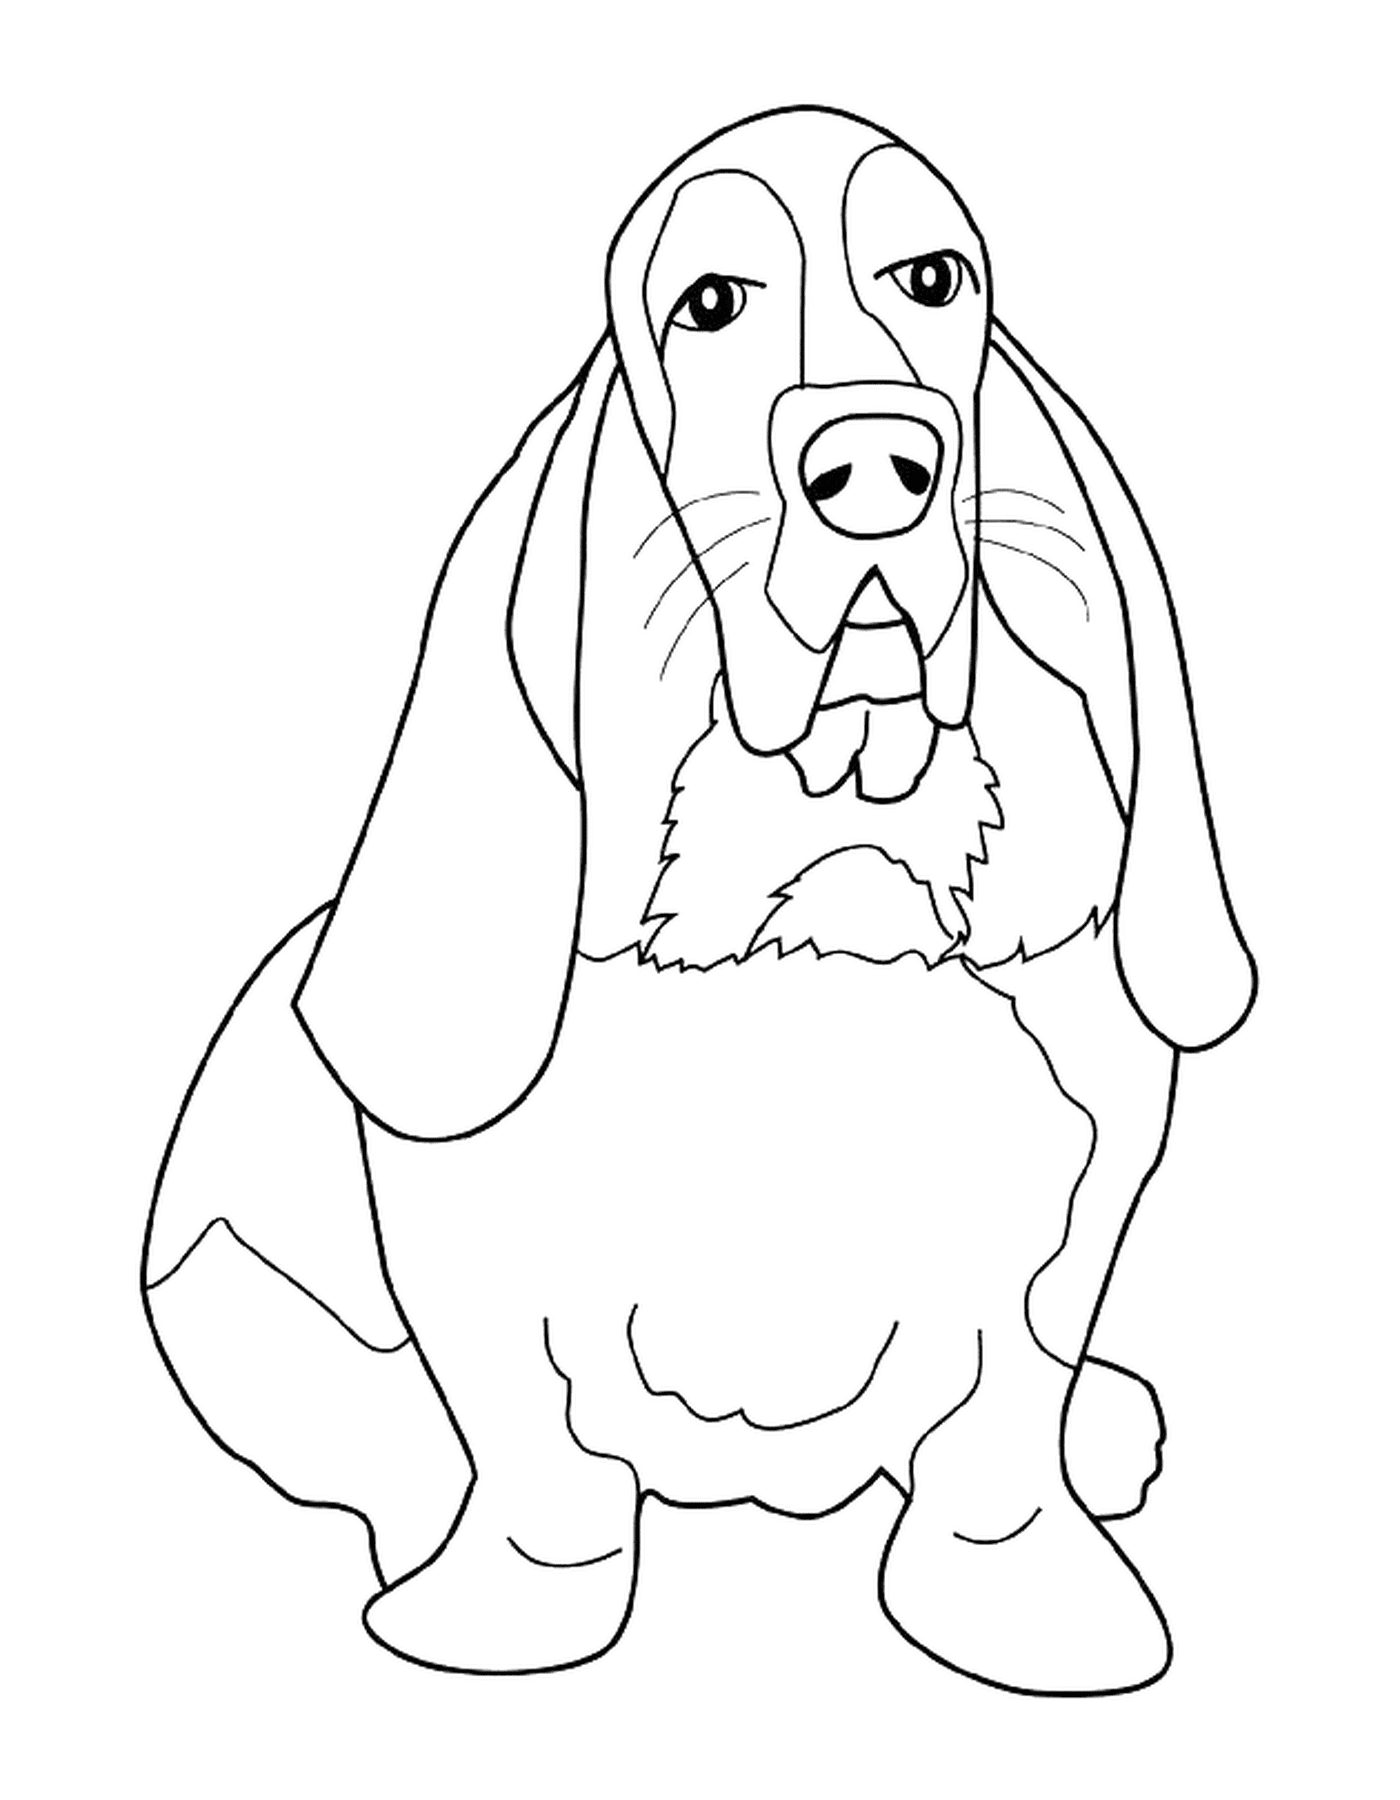  A basset hound 